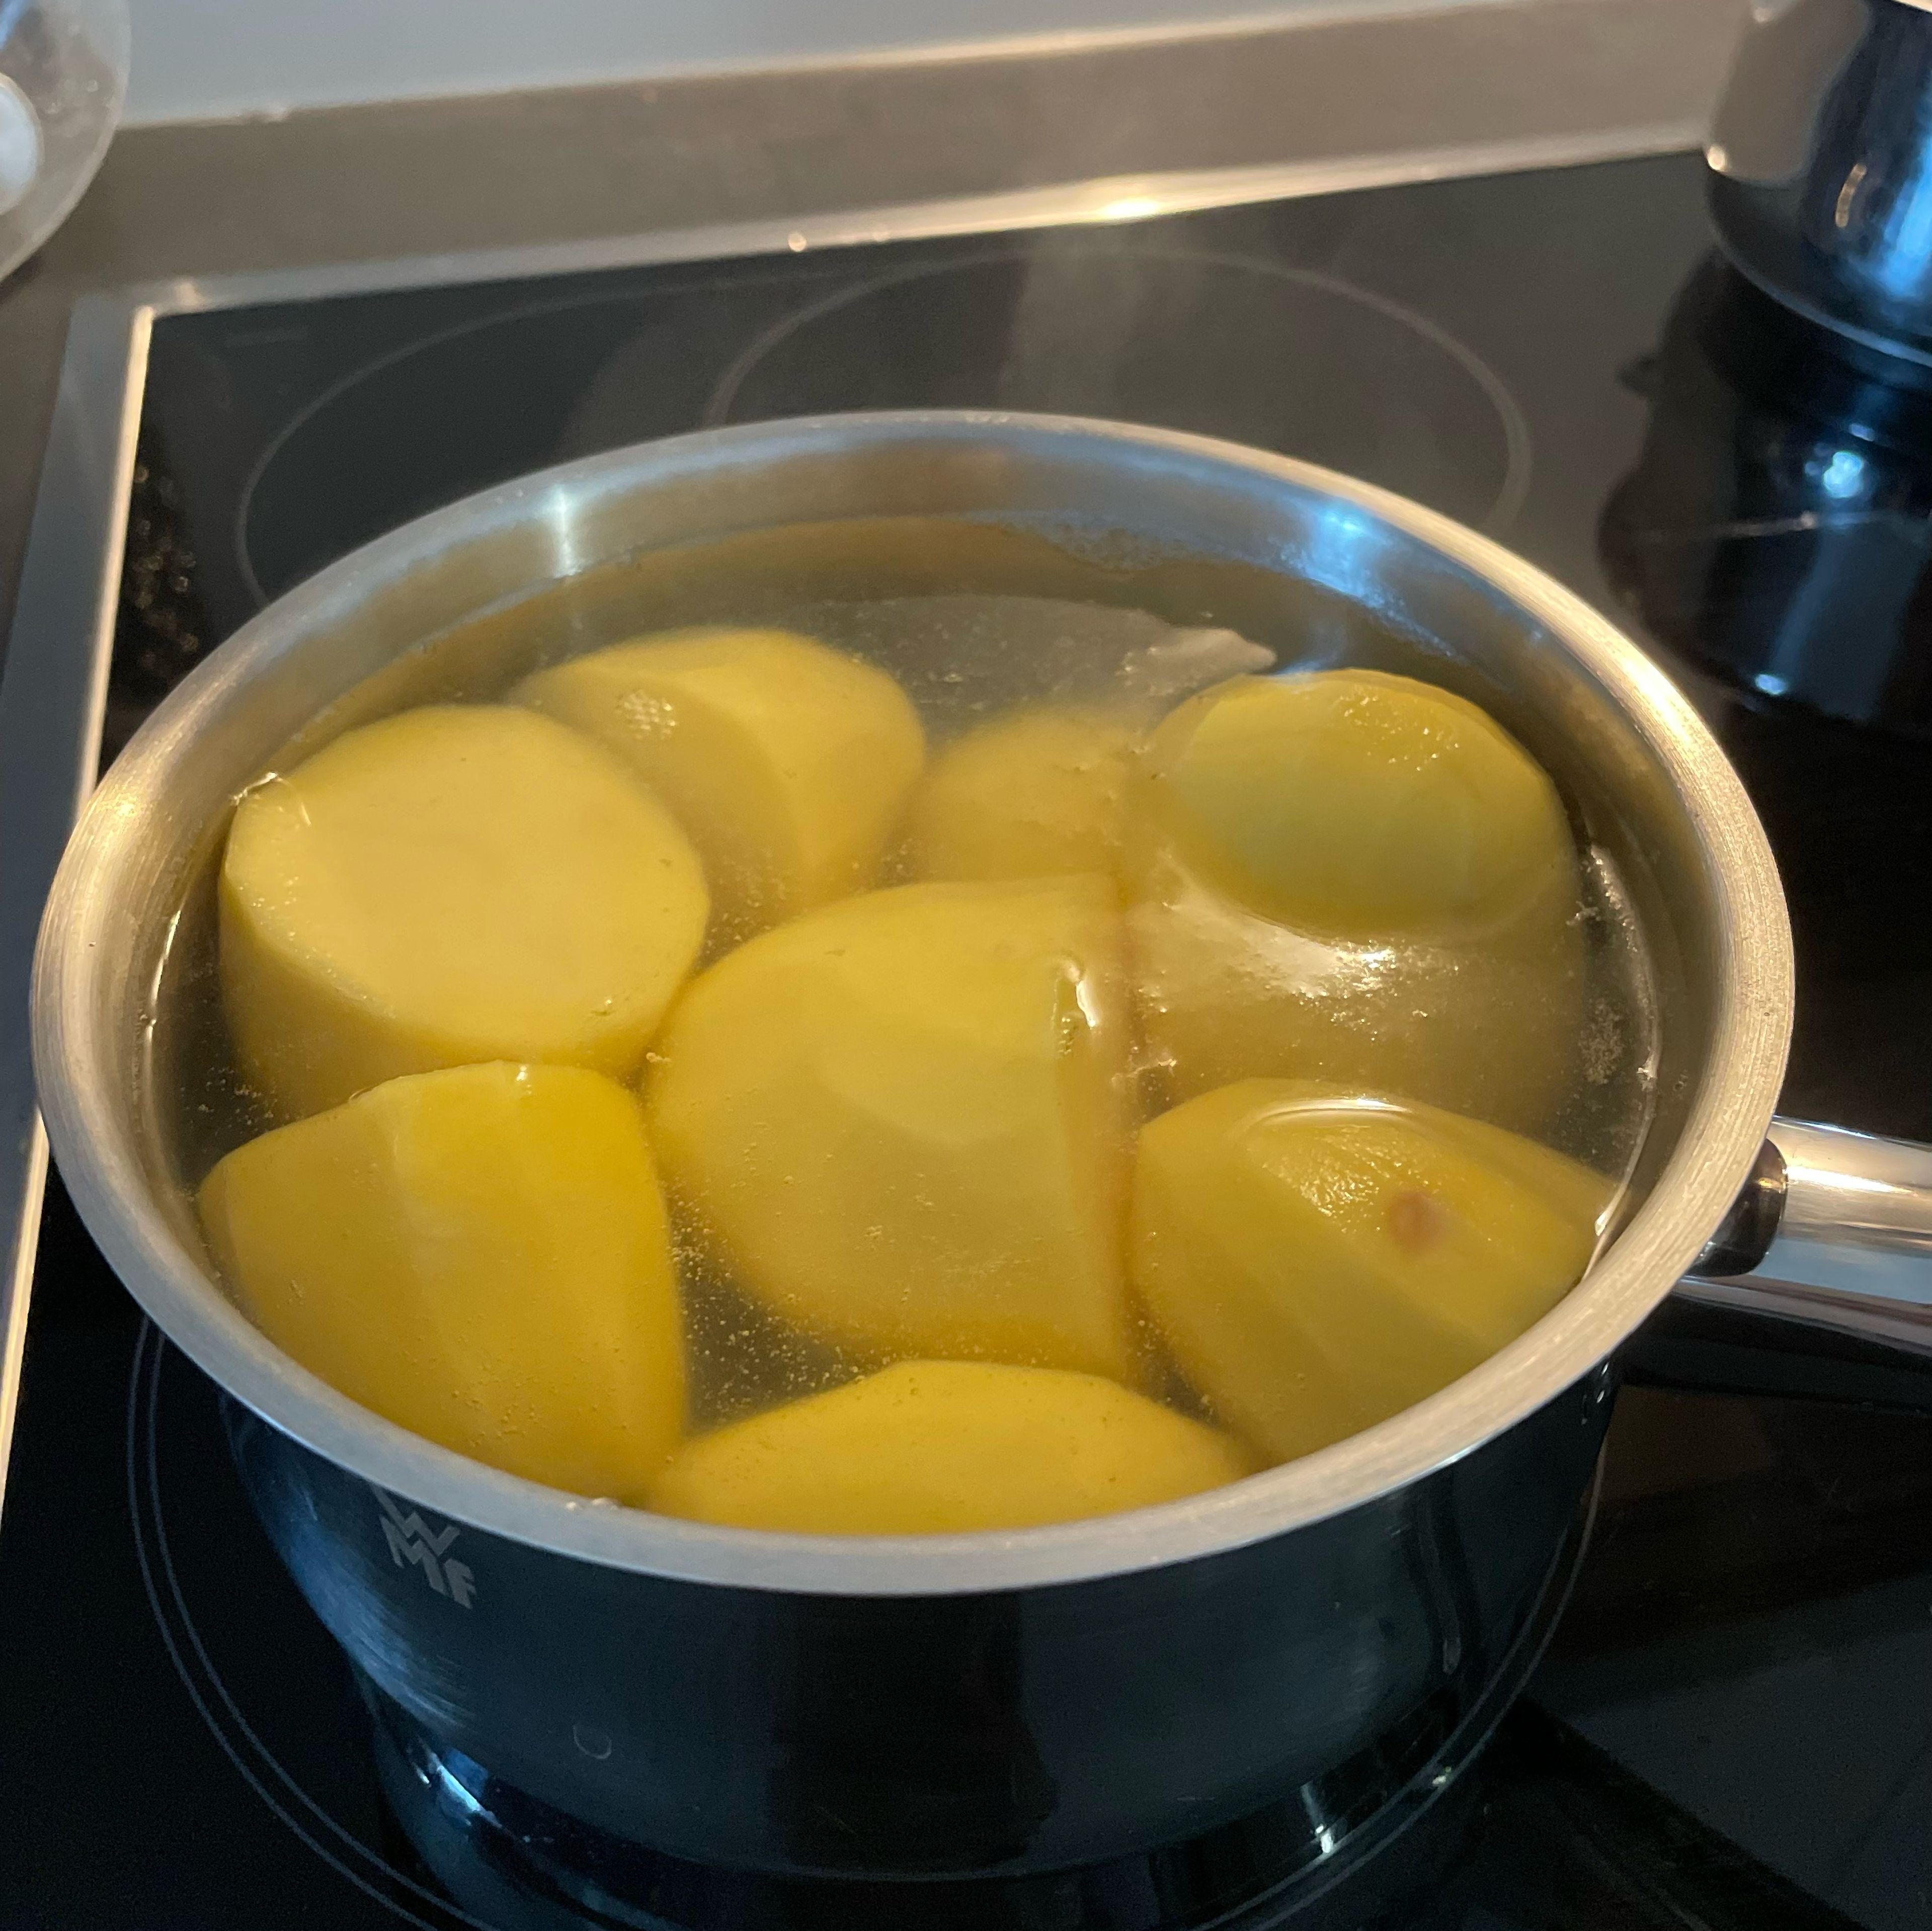 Je nach Hunger pro Person etwa 4 kleine Kartoffeln schälen, waschen und zum Kochen bringen. Sobald das Wasser kocht, gut salzen. Insgesamt ca. 45 Min. kochen bis die Kartoffeln weich sind.